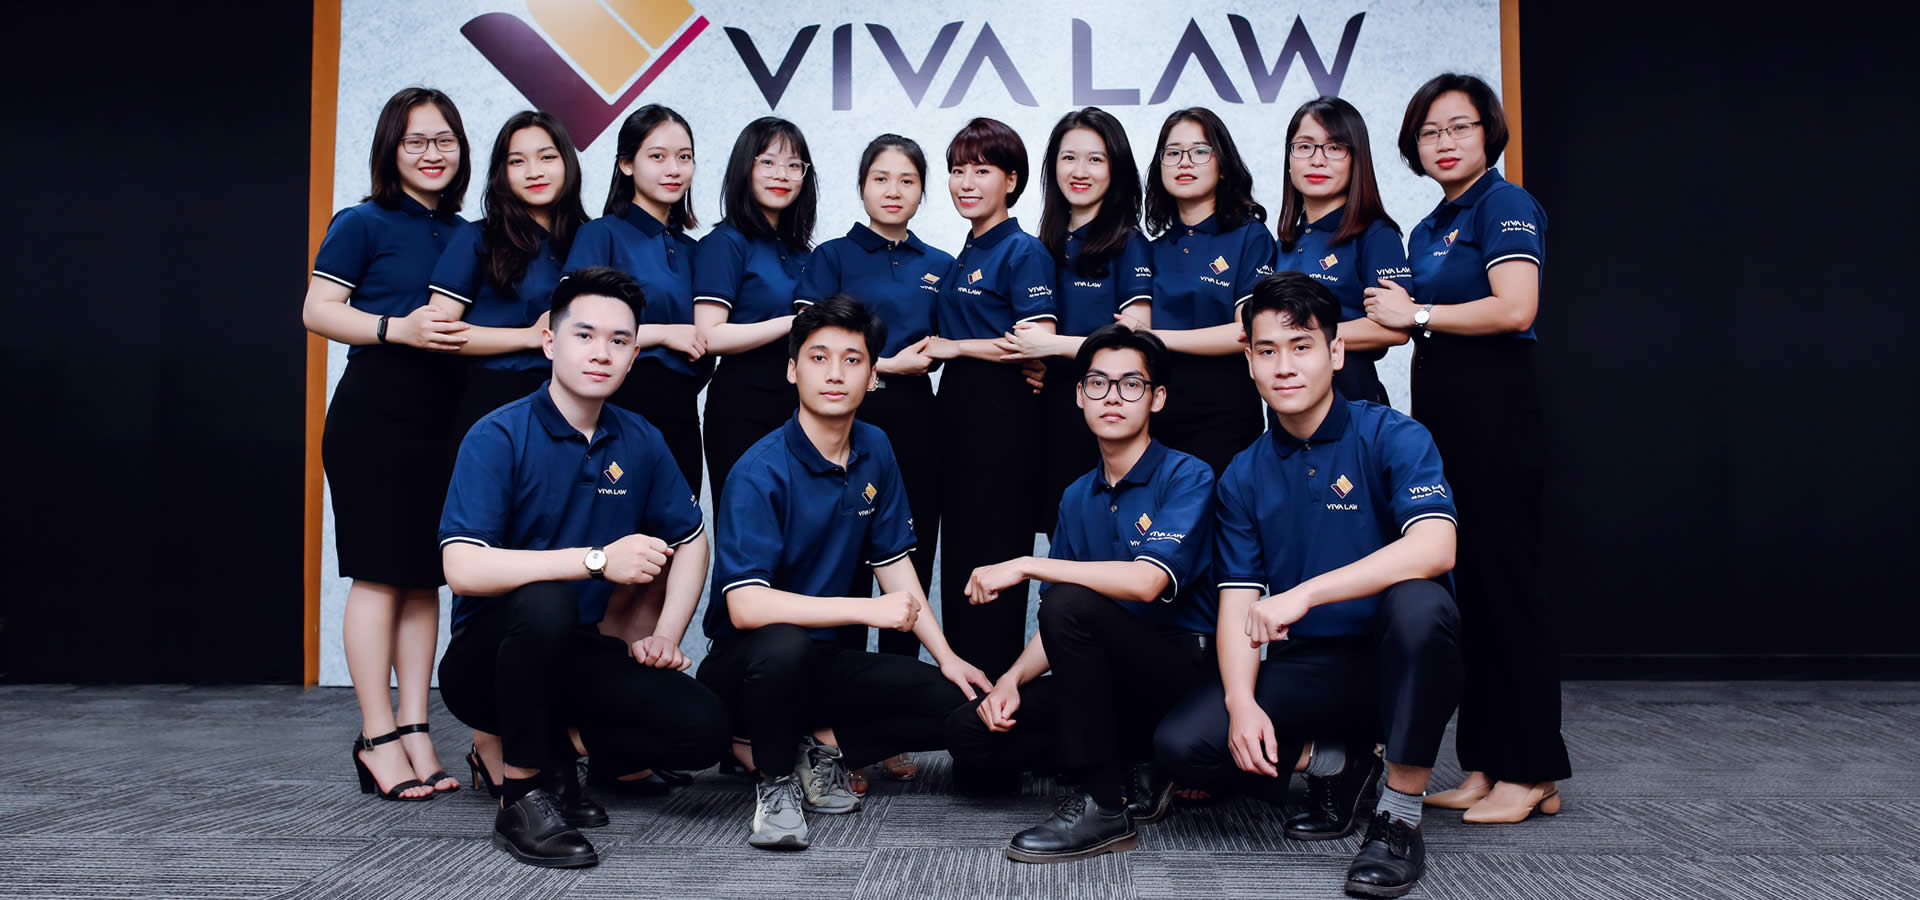 Vivalaw - dịch vụ pháp lý chuyên nghiệp